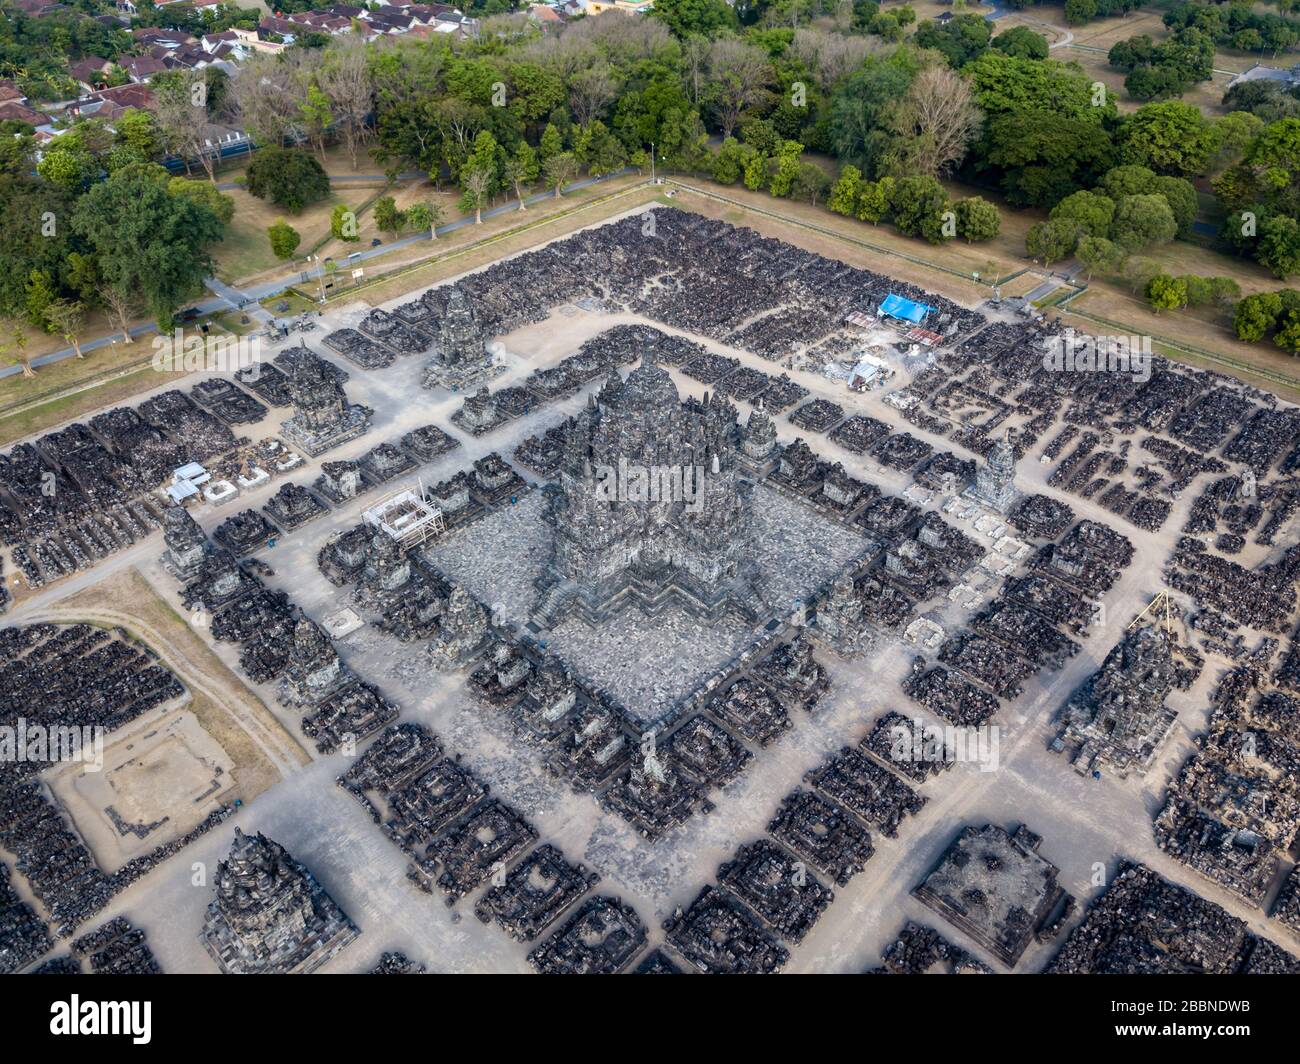 Vista de pájaro drones del templo hindú Prambanan Foto de stock